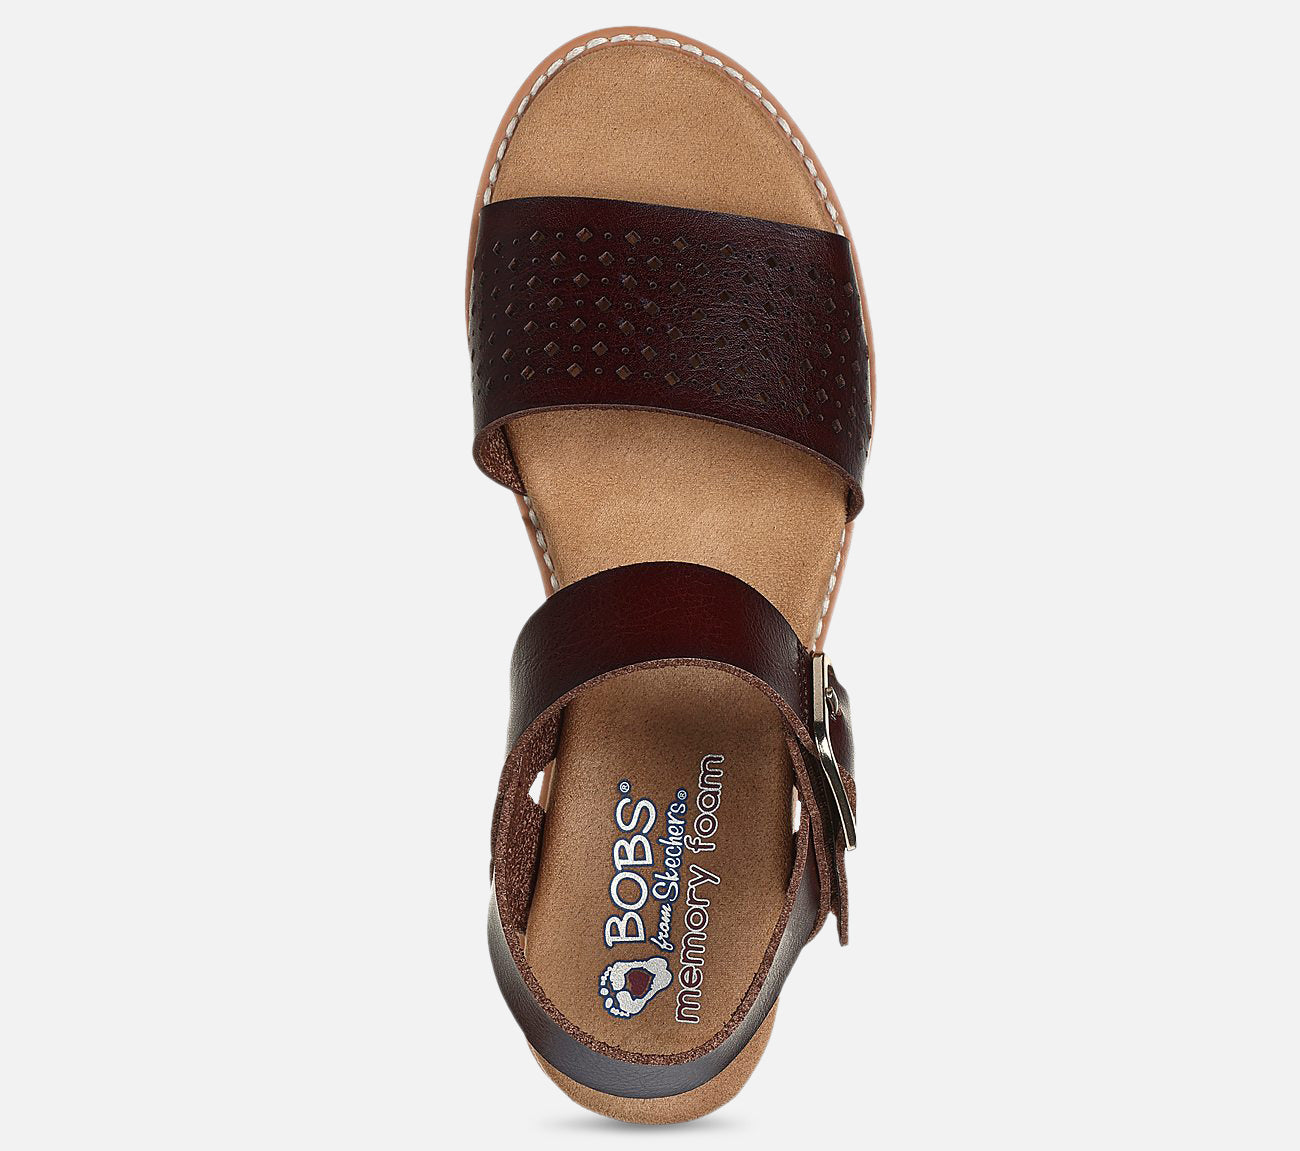 BOBS Desert Kiss - Sunny Flair Sandal Skechers